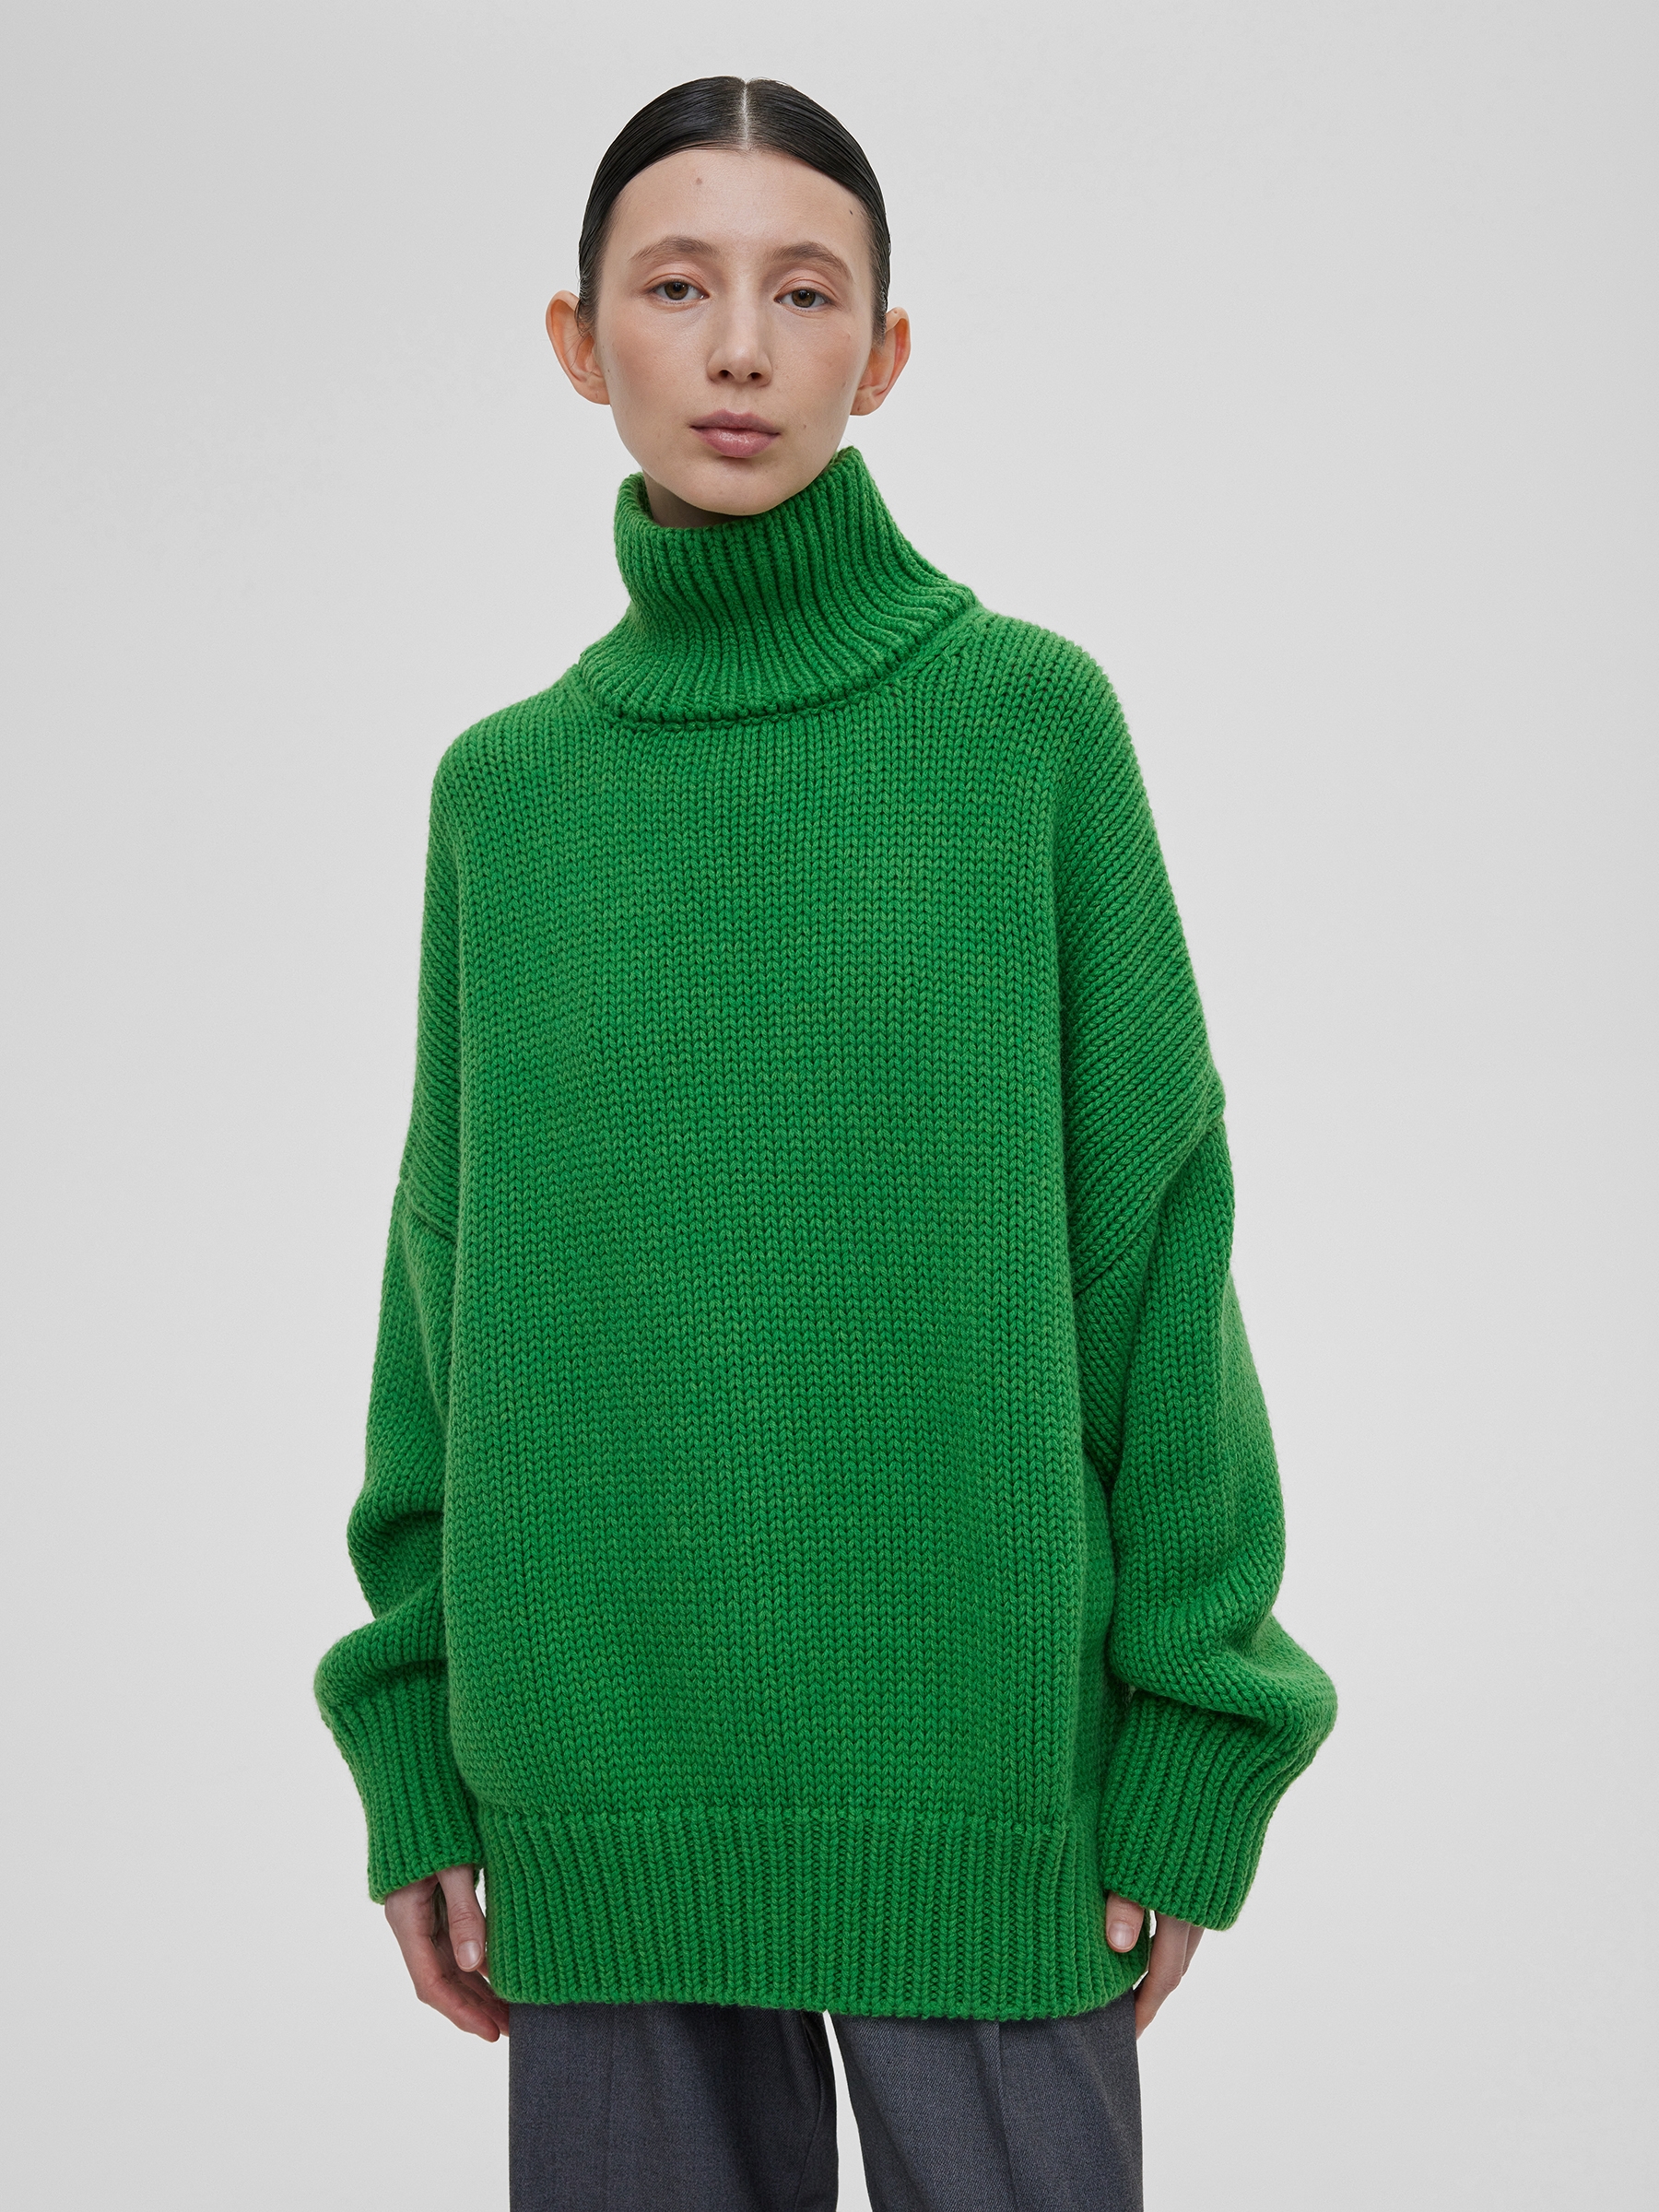 Свитер женский крупной вязки из шерсти, цвет – зеленый свитер женский с молнией крупной вязки цвет – молочный